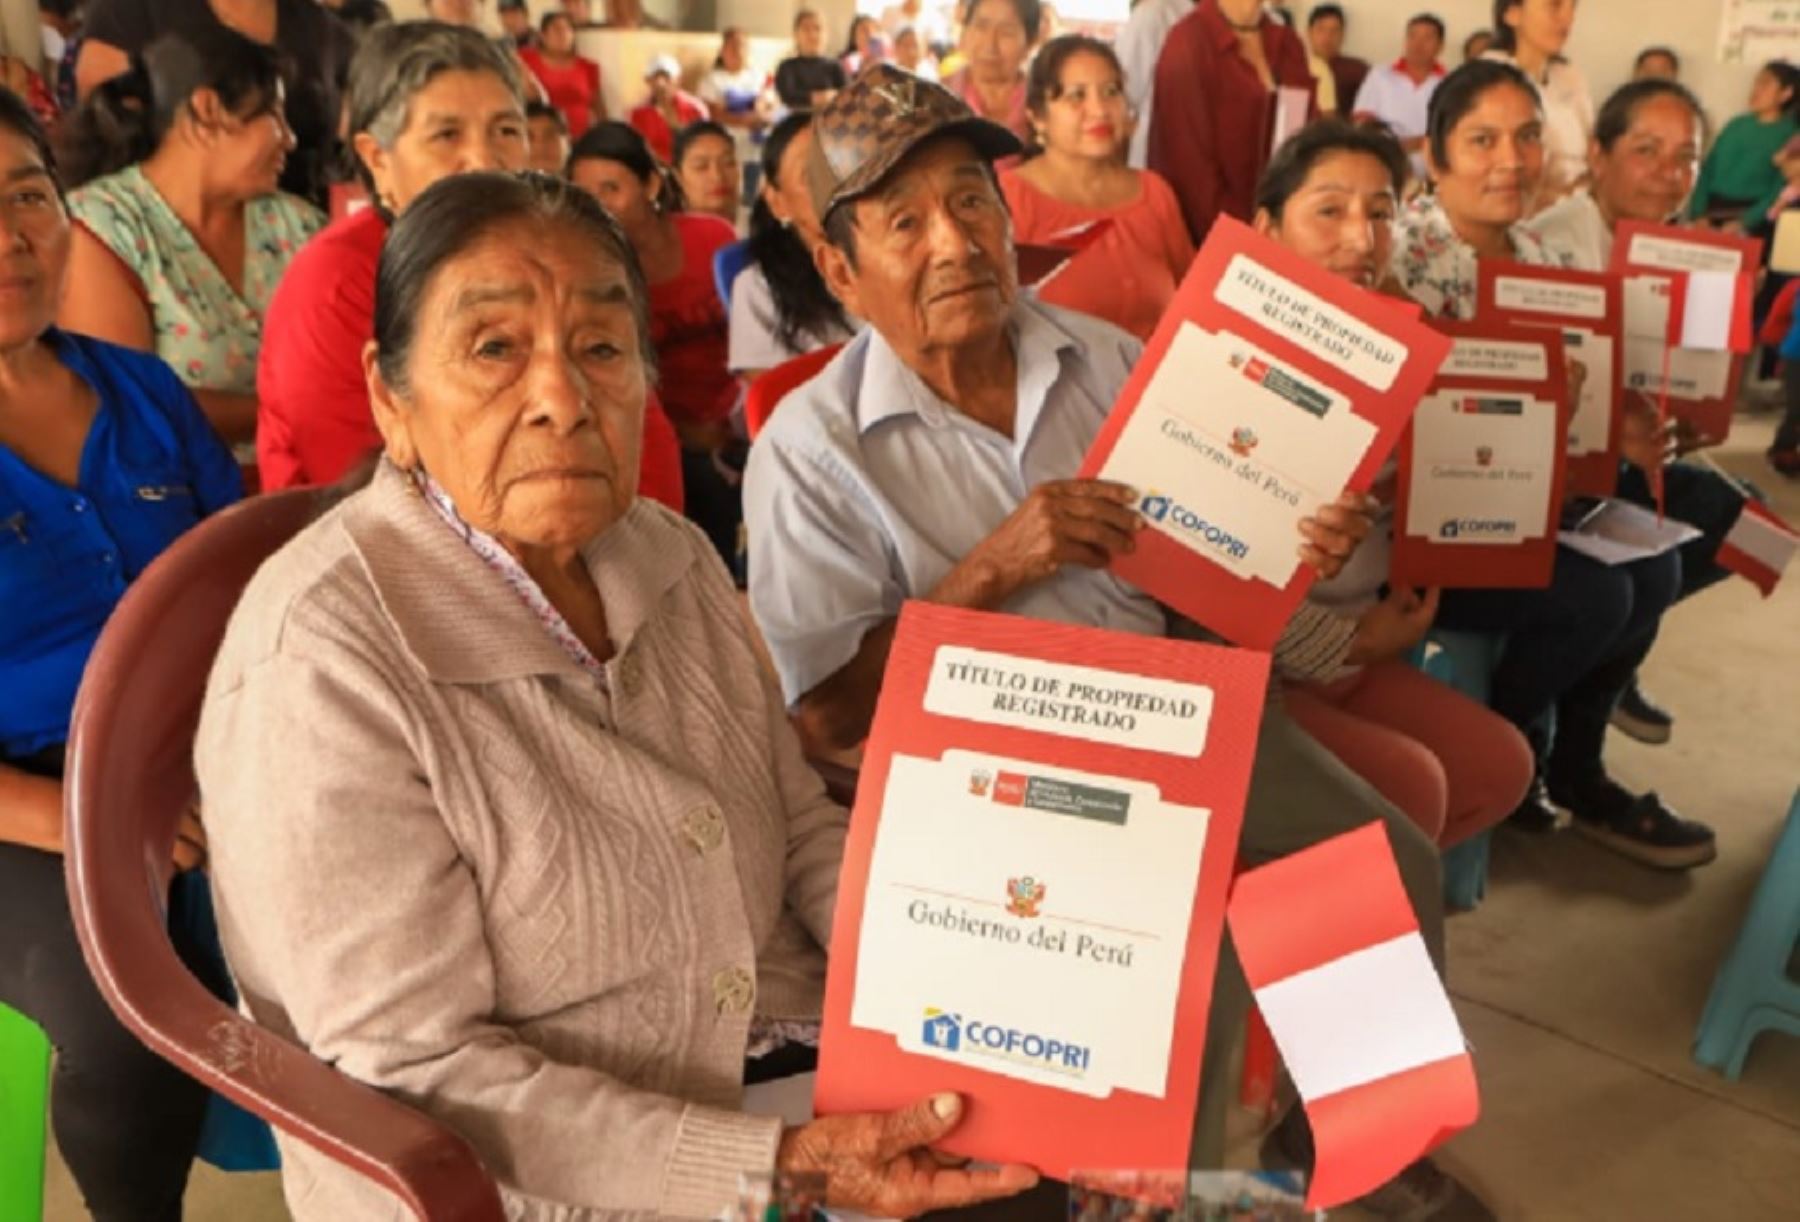 Como parte de la campaña de titulación urbana "Cofopri en tu distrito" se entregaron 831 títulos de propiedad a familias del asentamiento humano Pedro Ruiz Gallo, en Lambayeque, y al centro poblado Agropecuario del distrito de Lagunas en Chiclayo.